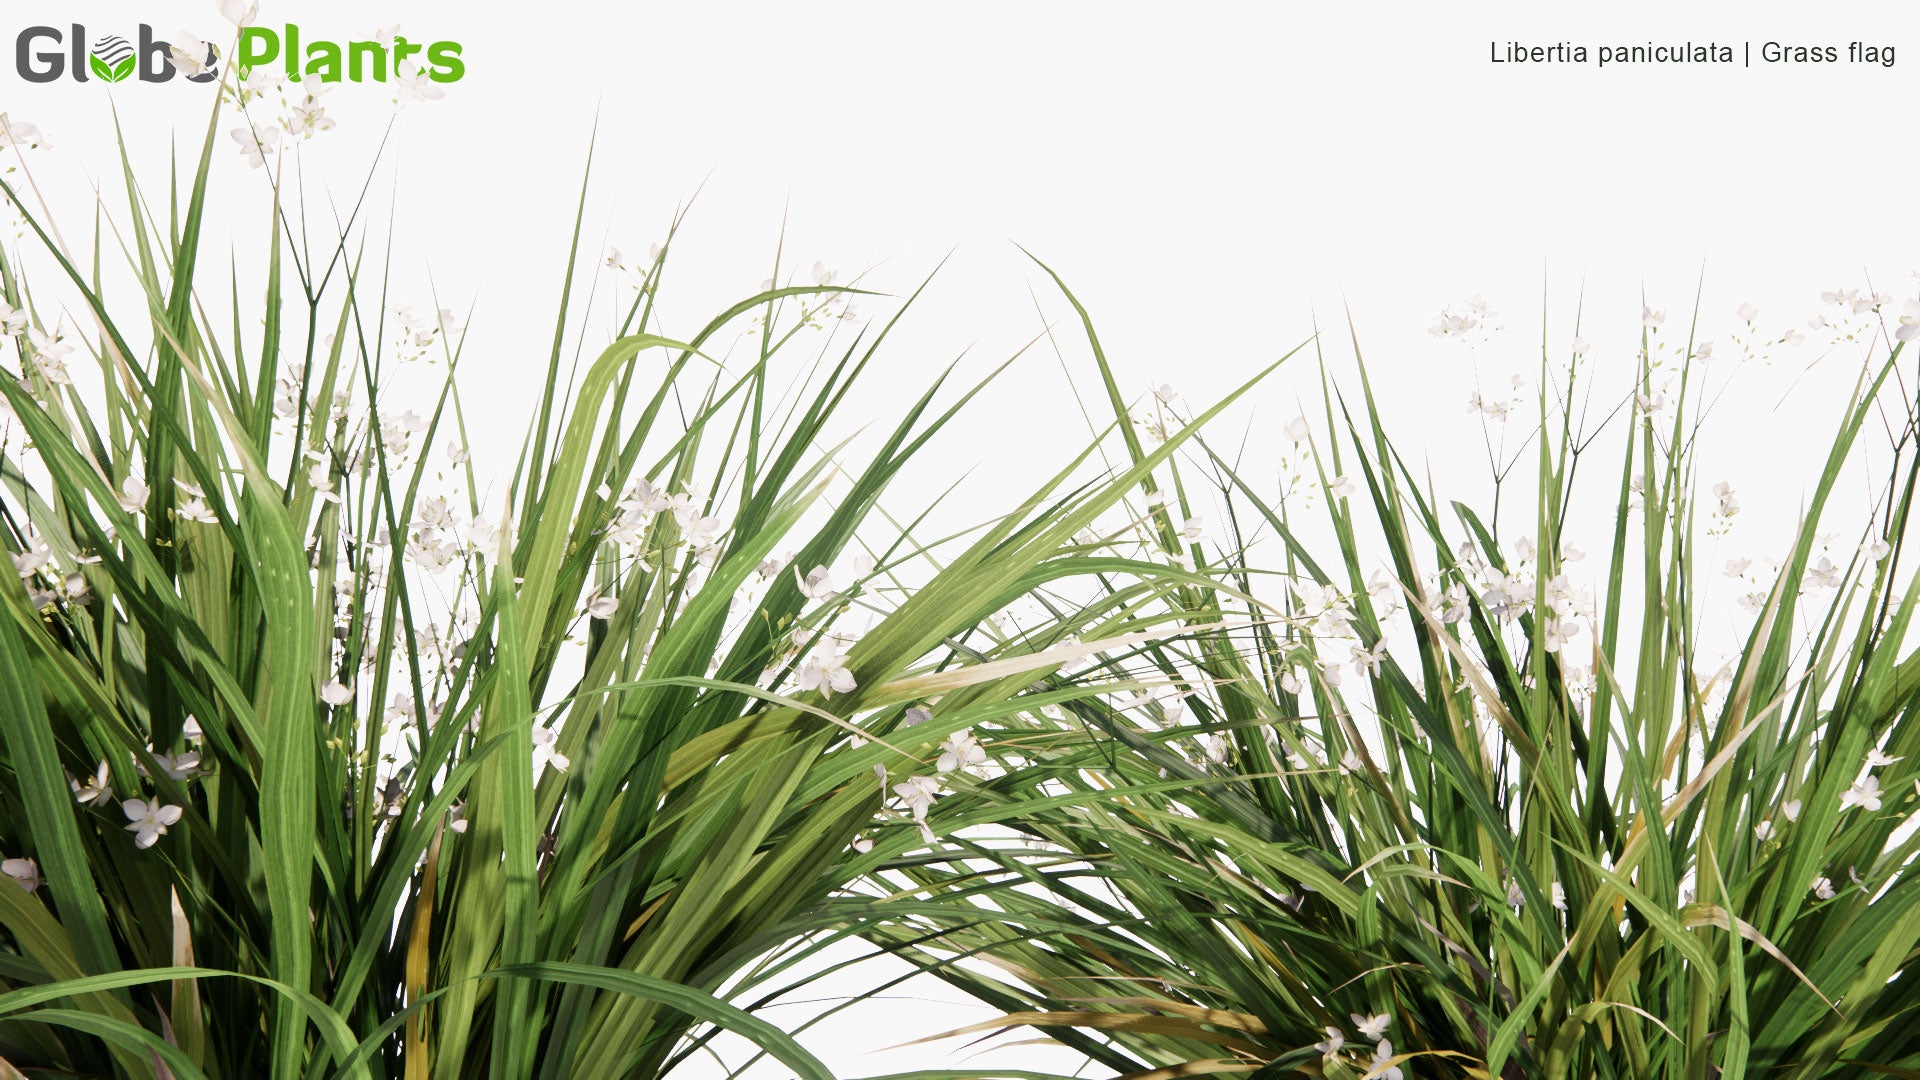 Low Poly Libertia Paniculata - Grass Flag (3D Model)